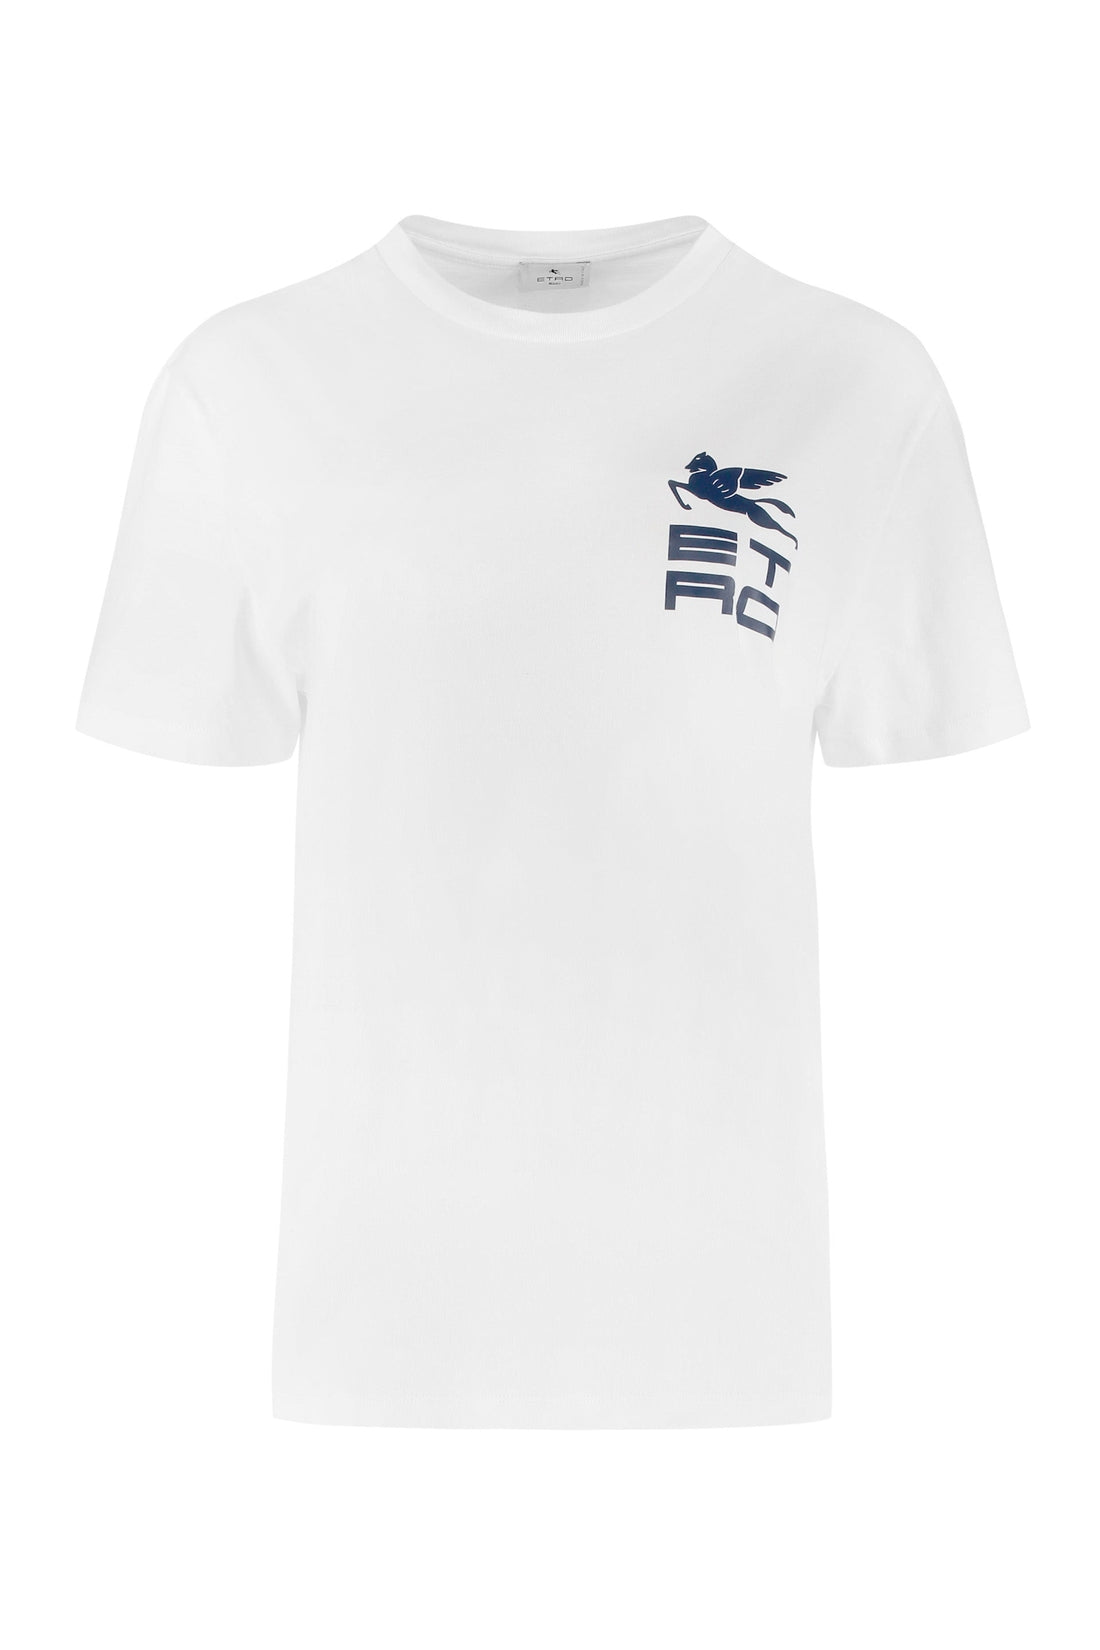 Etro-OUTLET-SALE-Logo cotton t-shirt-ARCHIVIST